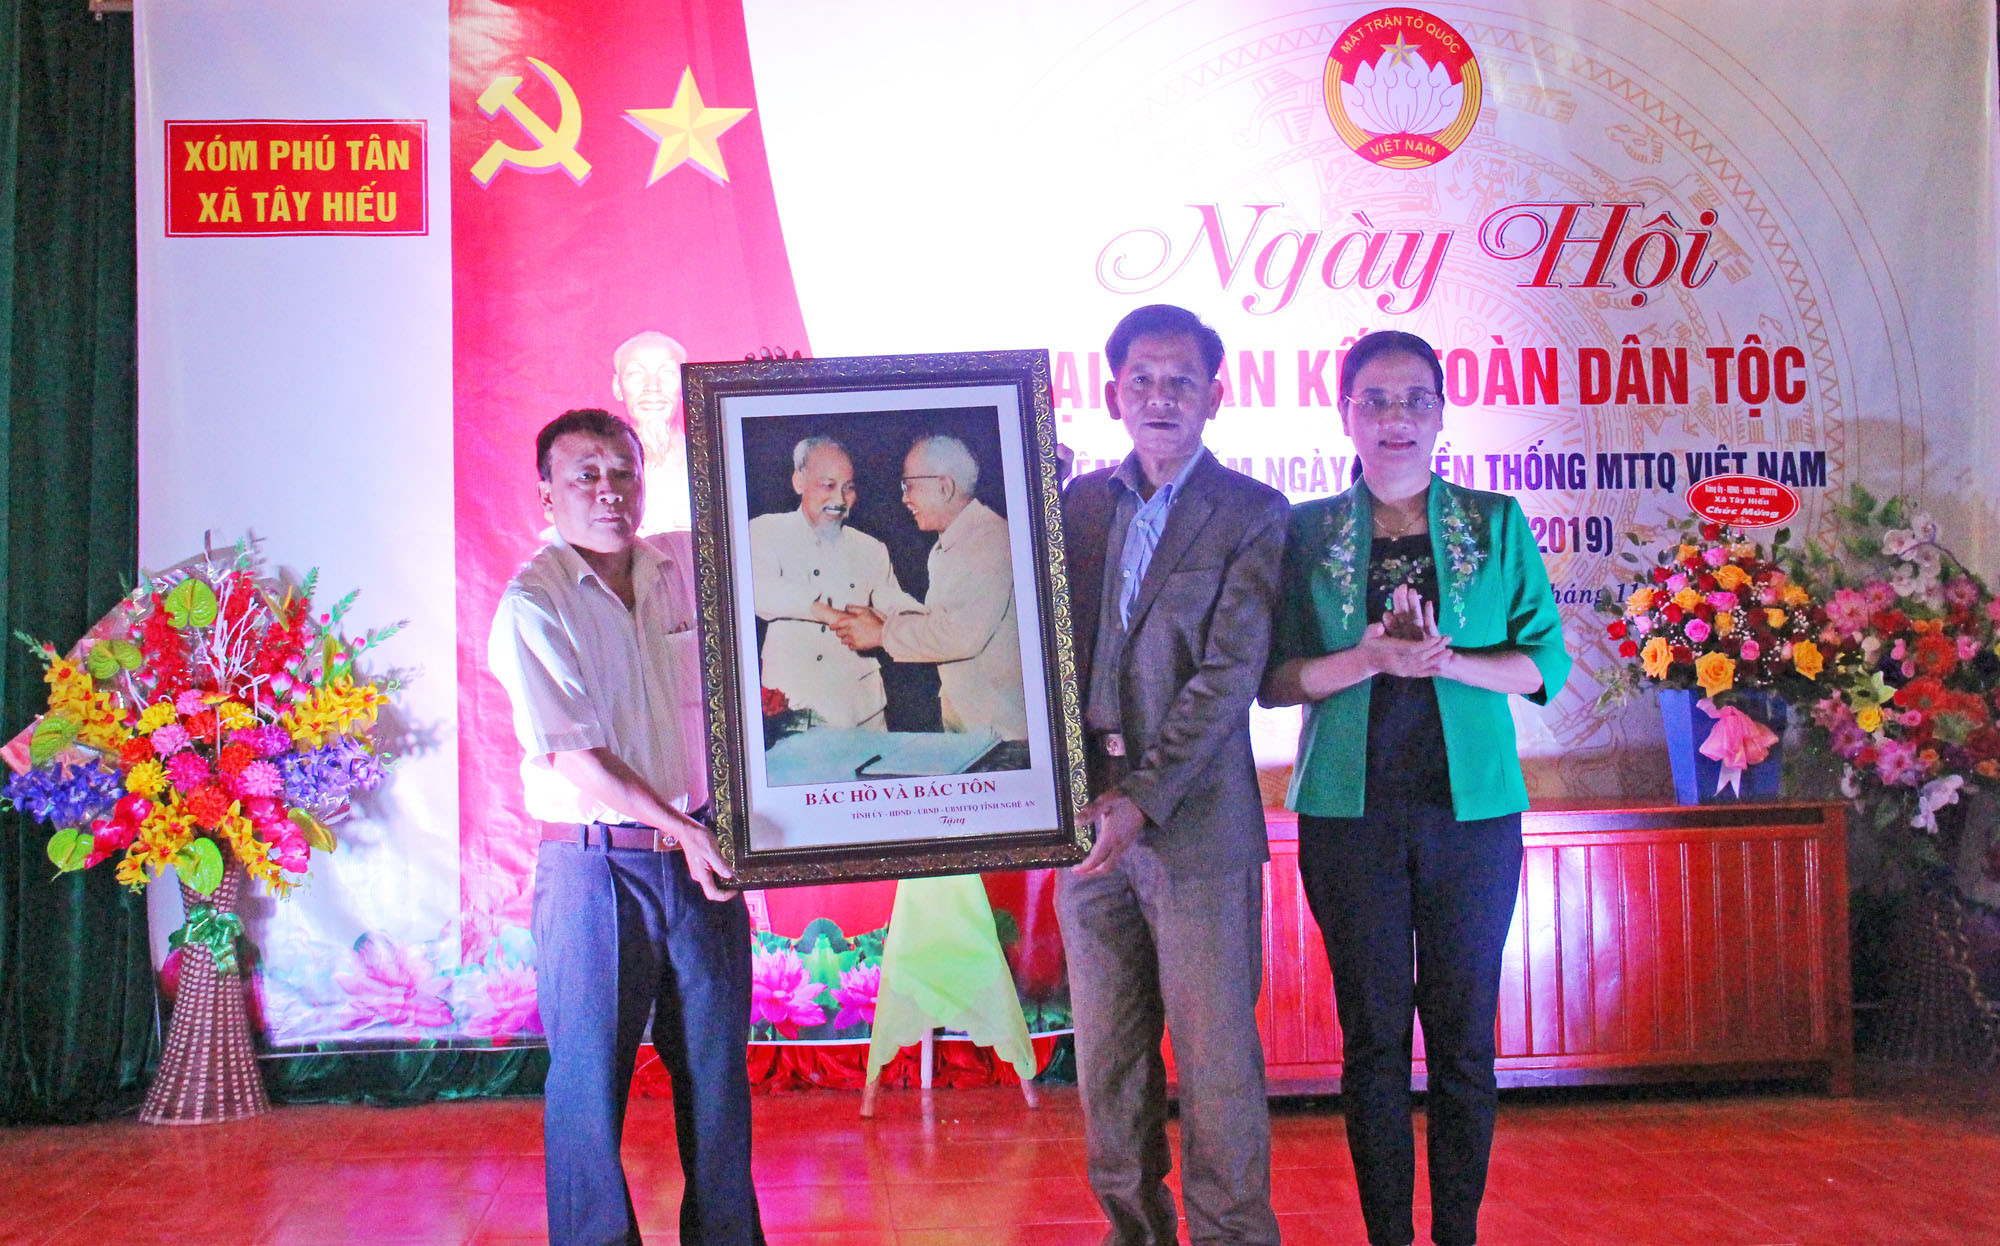 Đồng chí Cao Thị Hiền tặng quà lưu niệm cho nhân dân xóm Phú Tân tại Ngày hội. Ảnh: Thanh Quỳnh